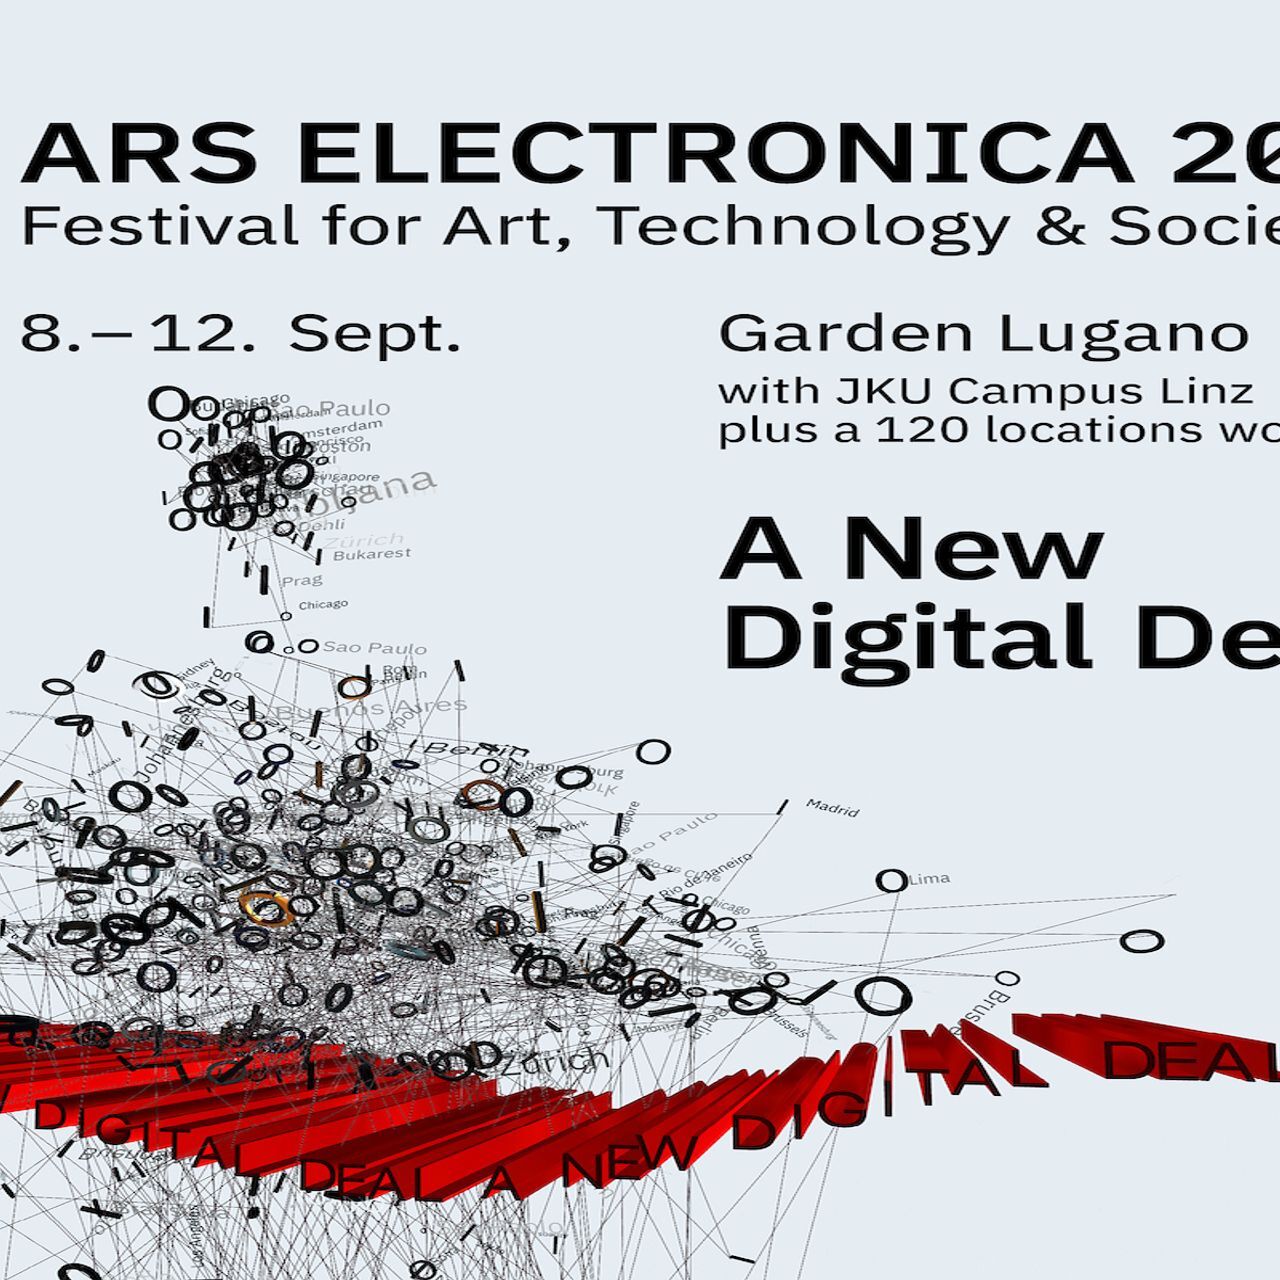 La locandina del festival Ars Electronica all'esordio a Lugano il 9-12 settembre 2021